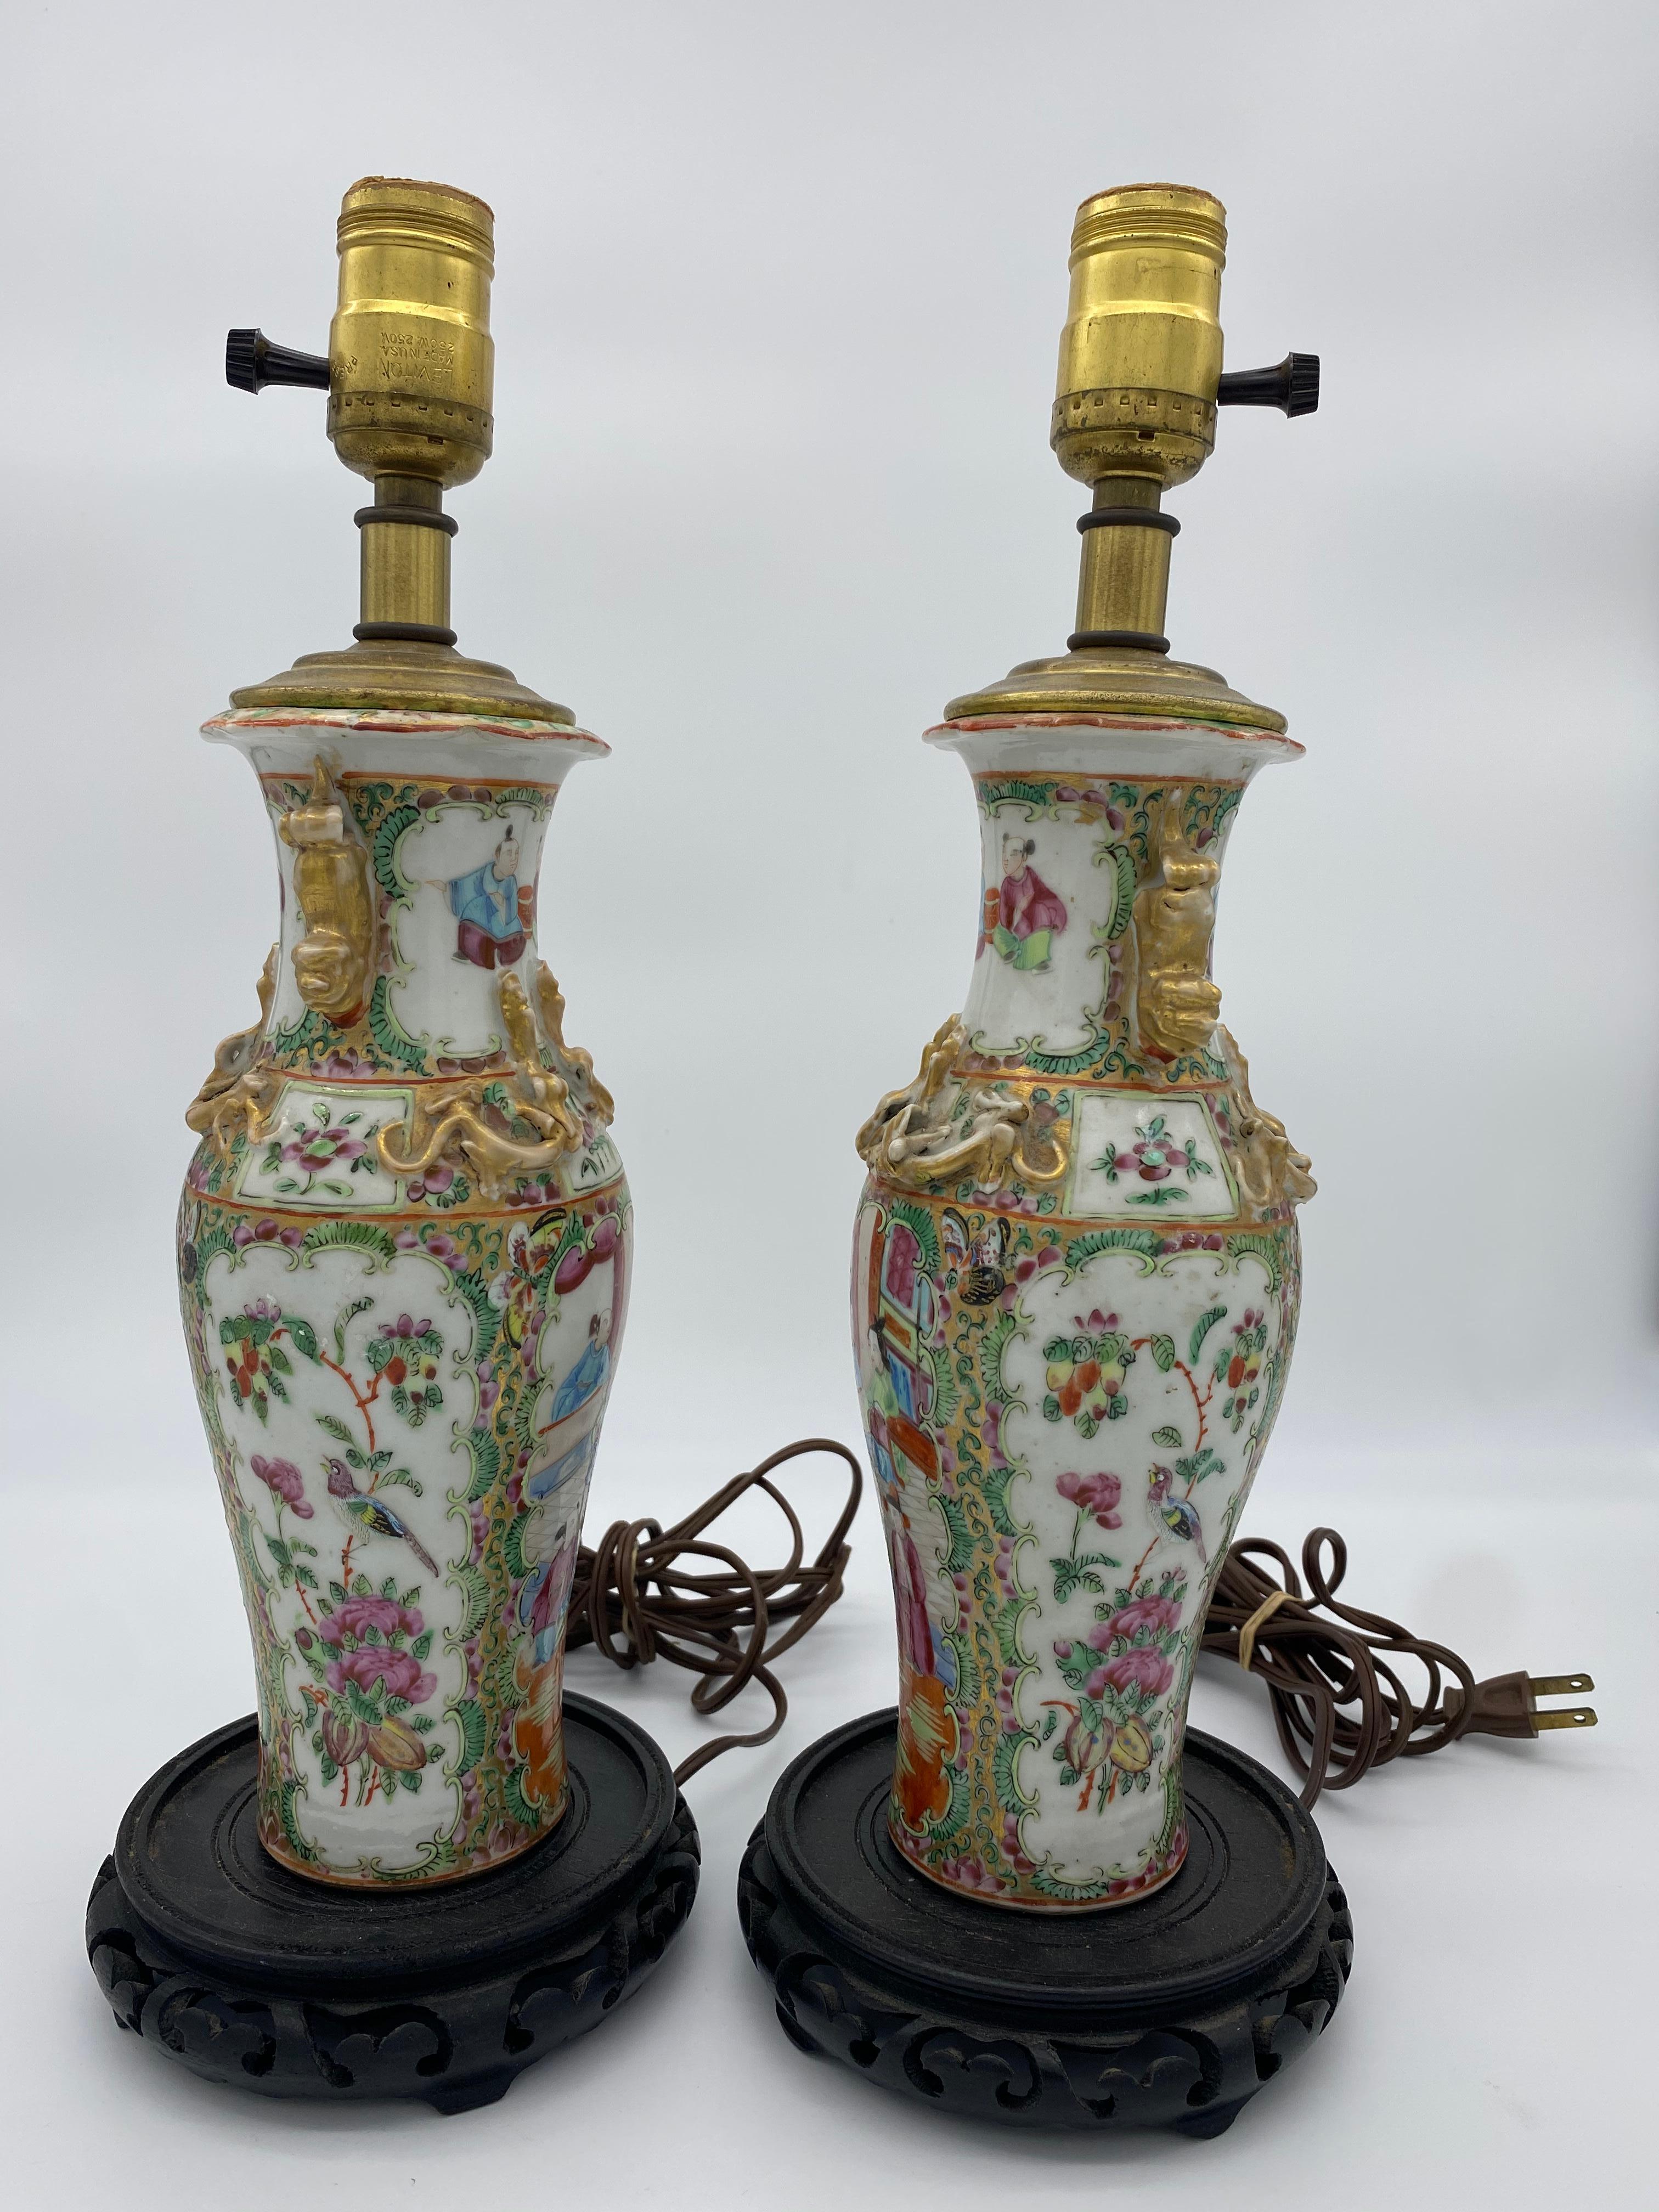 Chinesische Porzellanvase aus dem 19. Jahrhundert, jetzt als Lampe montiert. Geschmückt mit schönen Blumen und einer Familie. Vase nicht einschließlich Lampe ist 10 Zoll hoch.